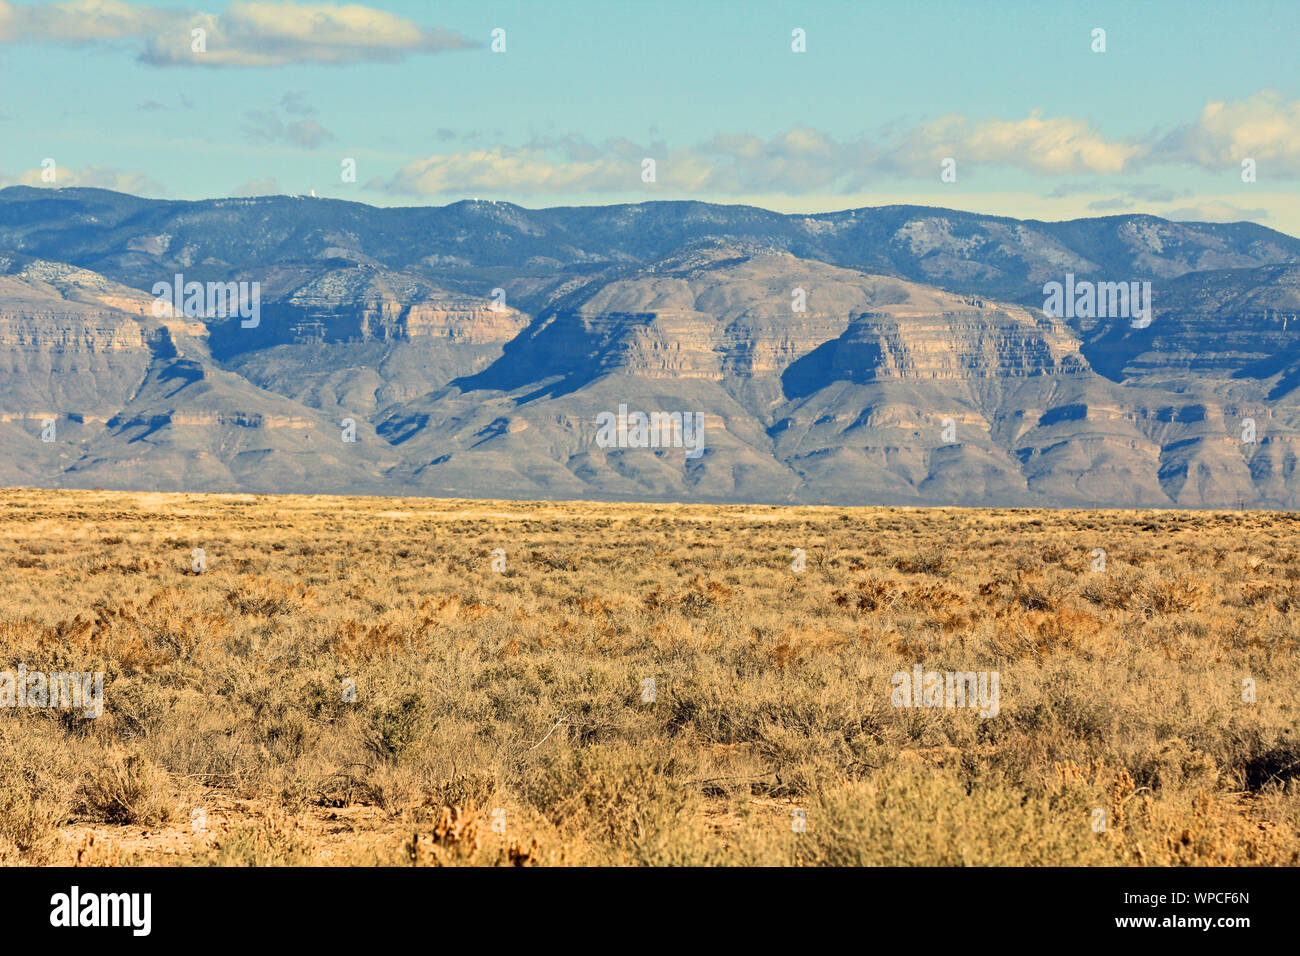 Tularosa Basin, New Mexico Stock Photo